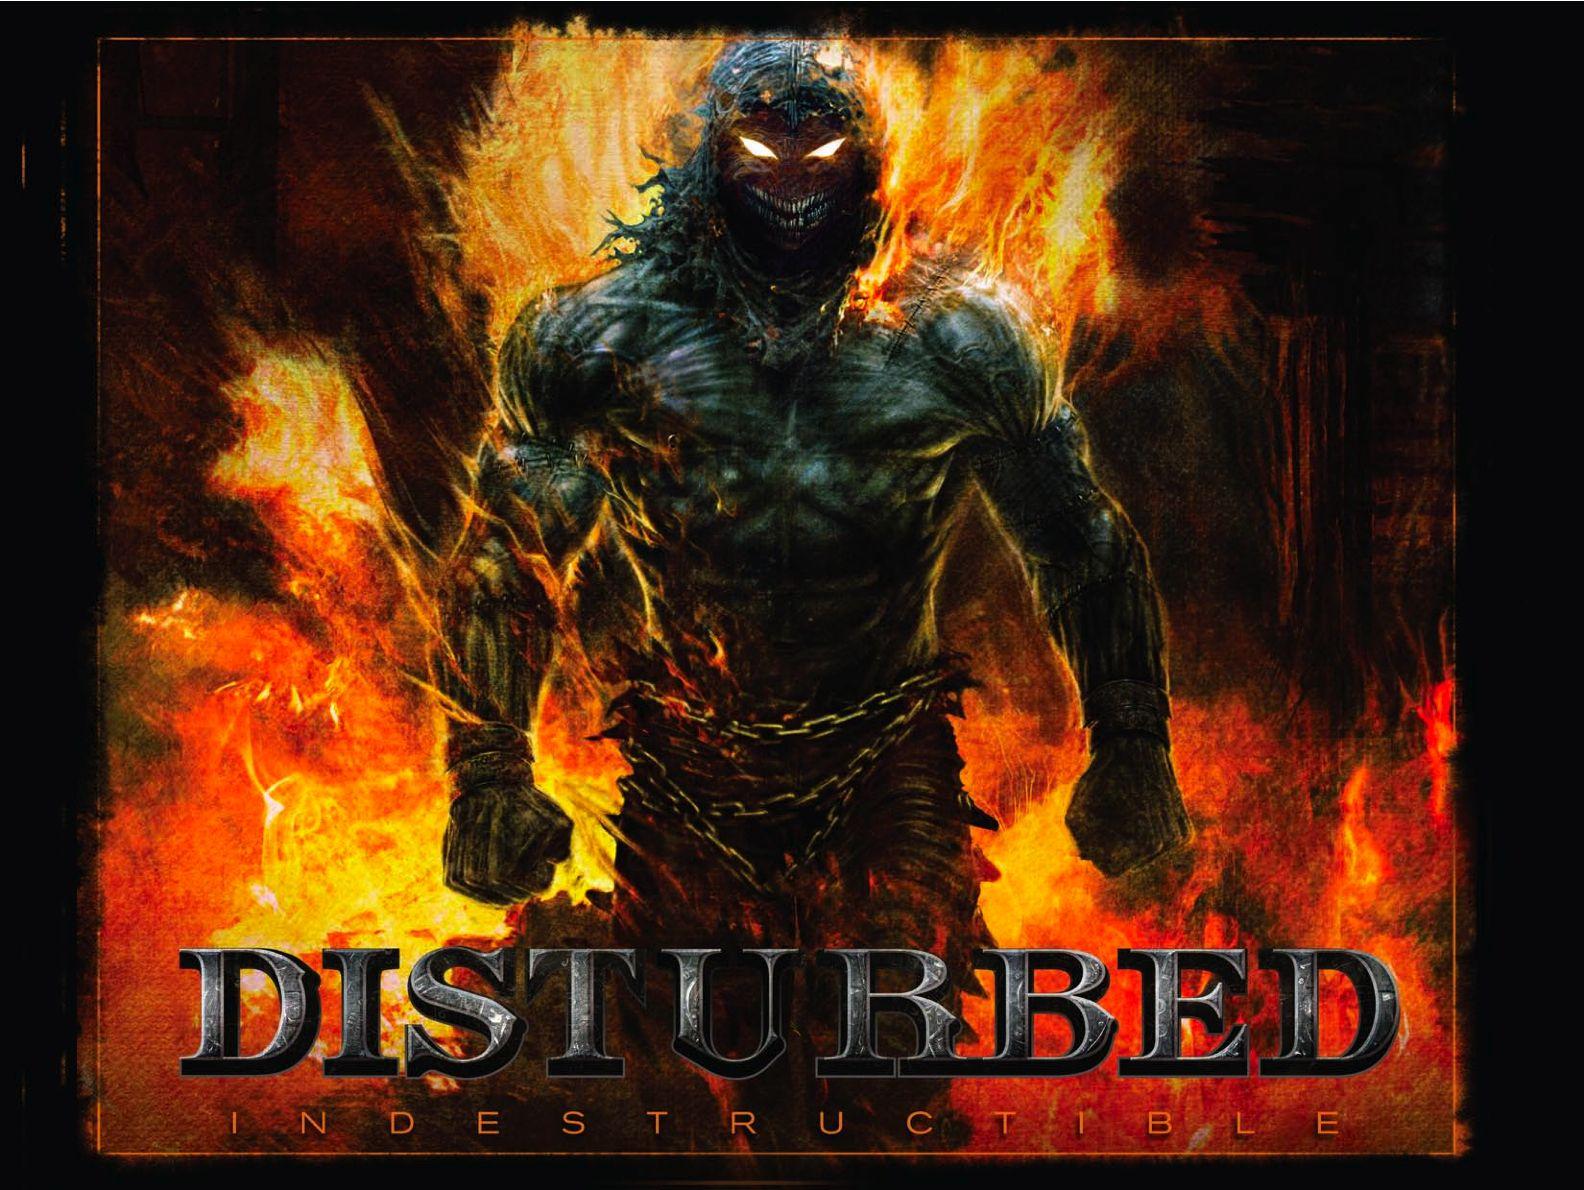 The Guy Disturbed Logo - The Guy (Disturbed) | Oidarcn Wikia | FANDOM powered by Wikia